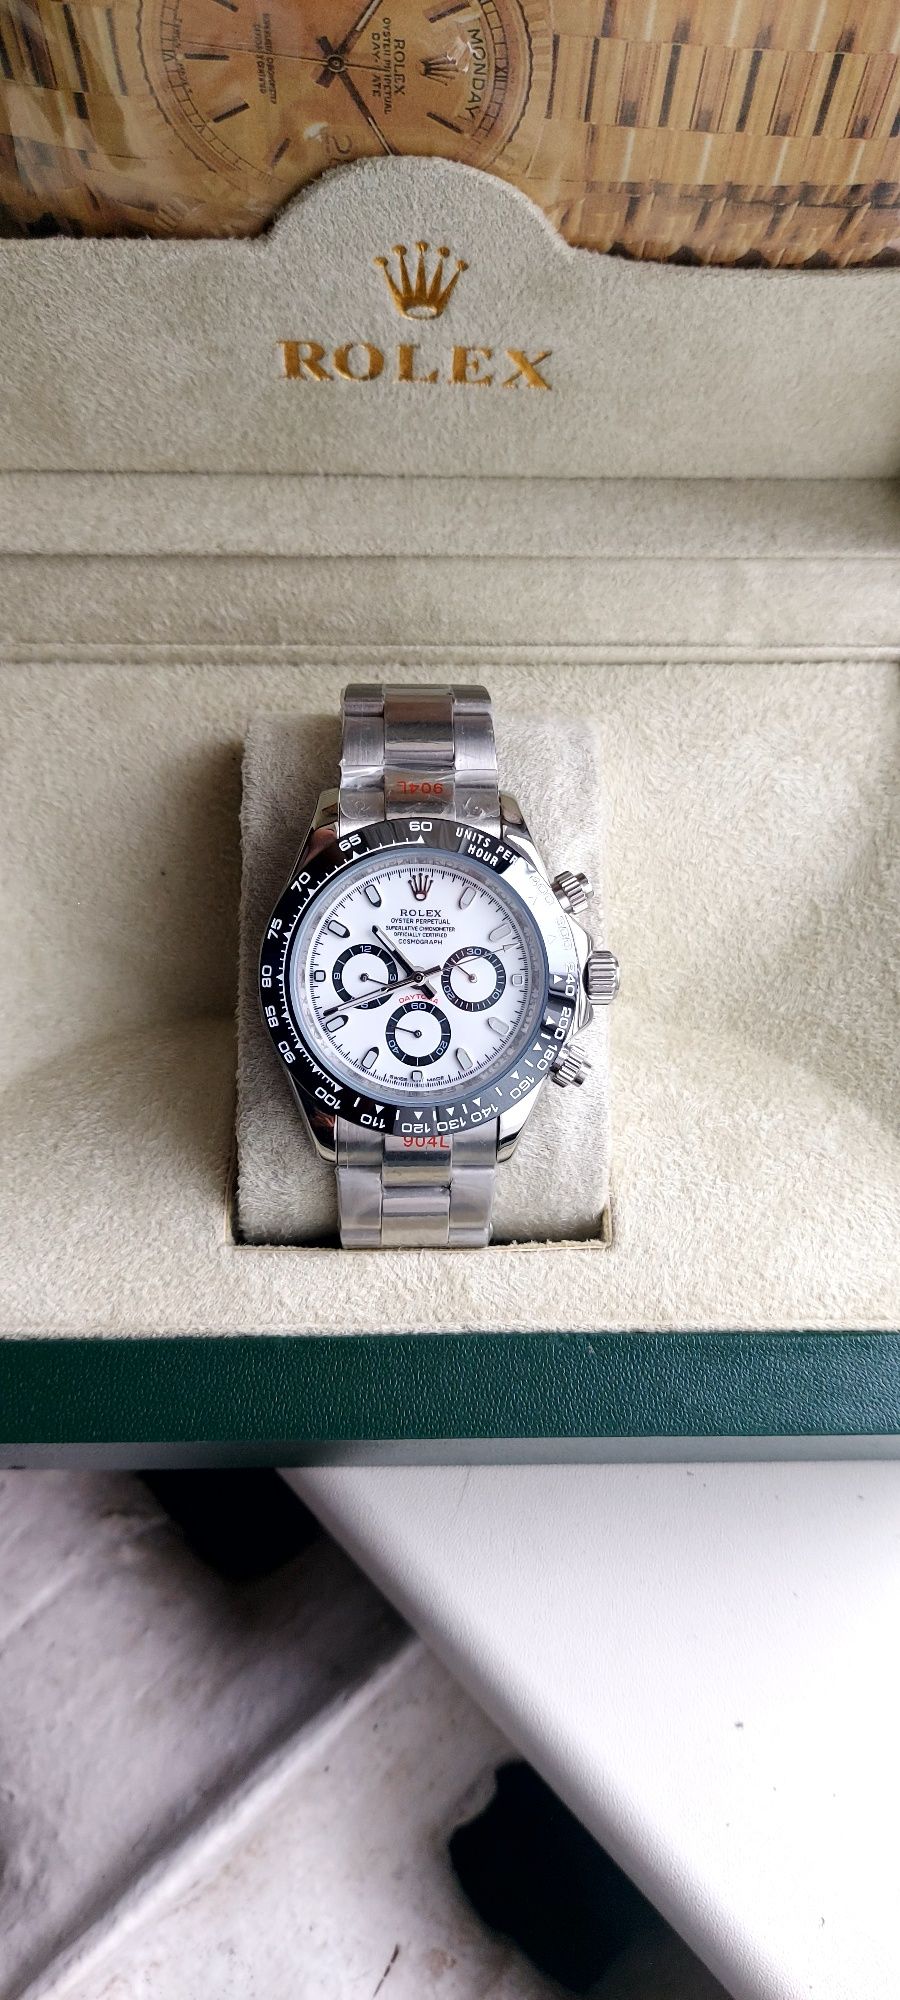 Срочно продам часы Rolex Daytona премиального качество!